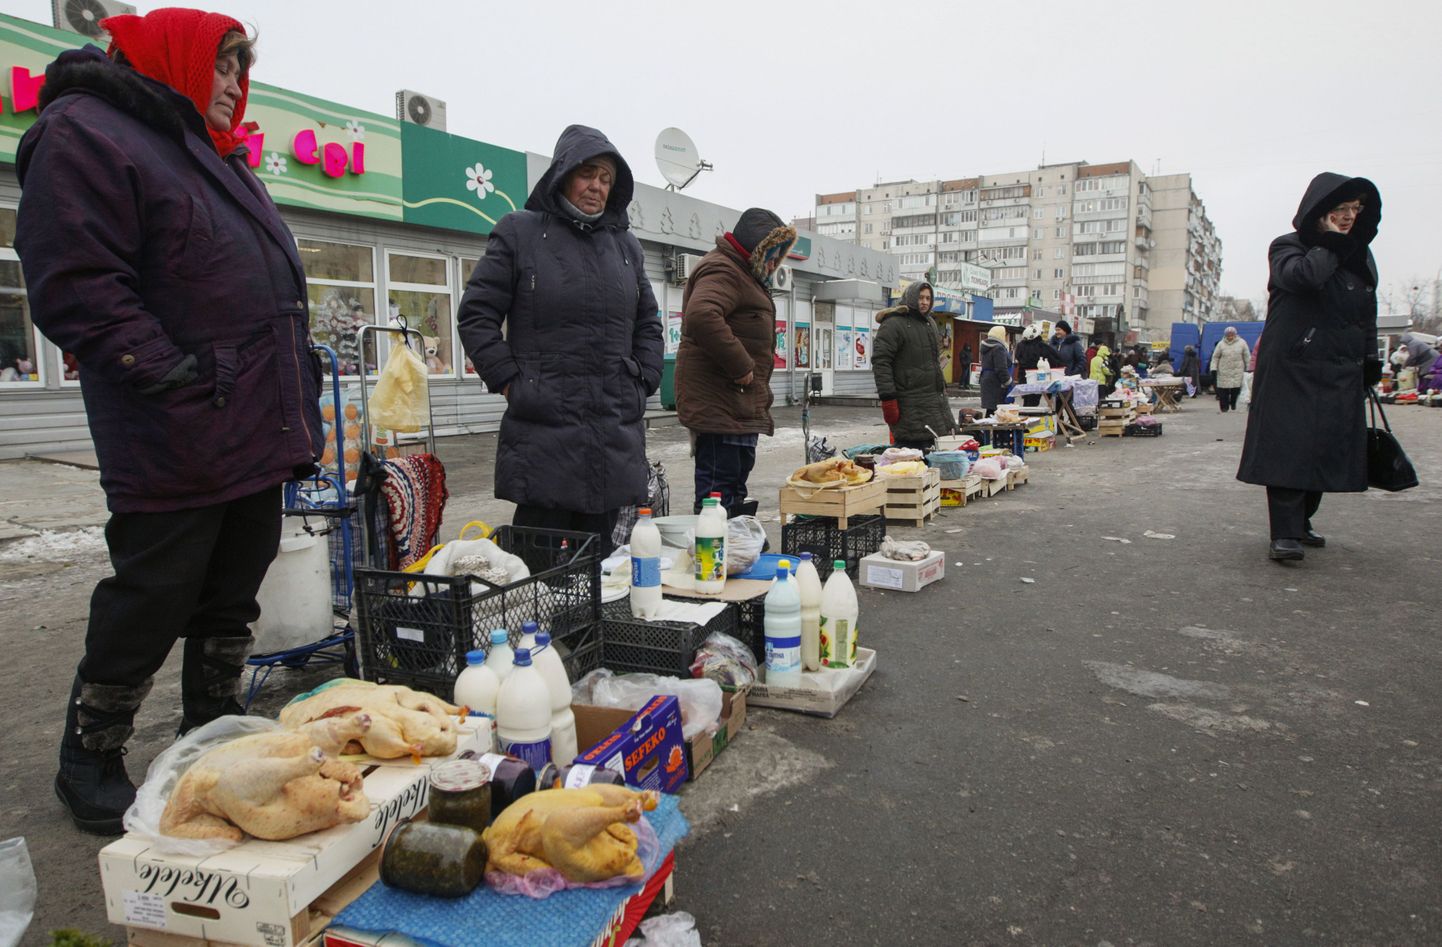 Enamasti pensionieas naised Kiievi ümbrusest tavatsevad omakasvatatud toitu pealinnas müümas käia. Ukrainat ootab ees ränk talv.